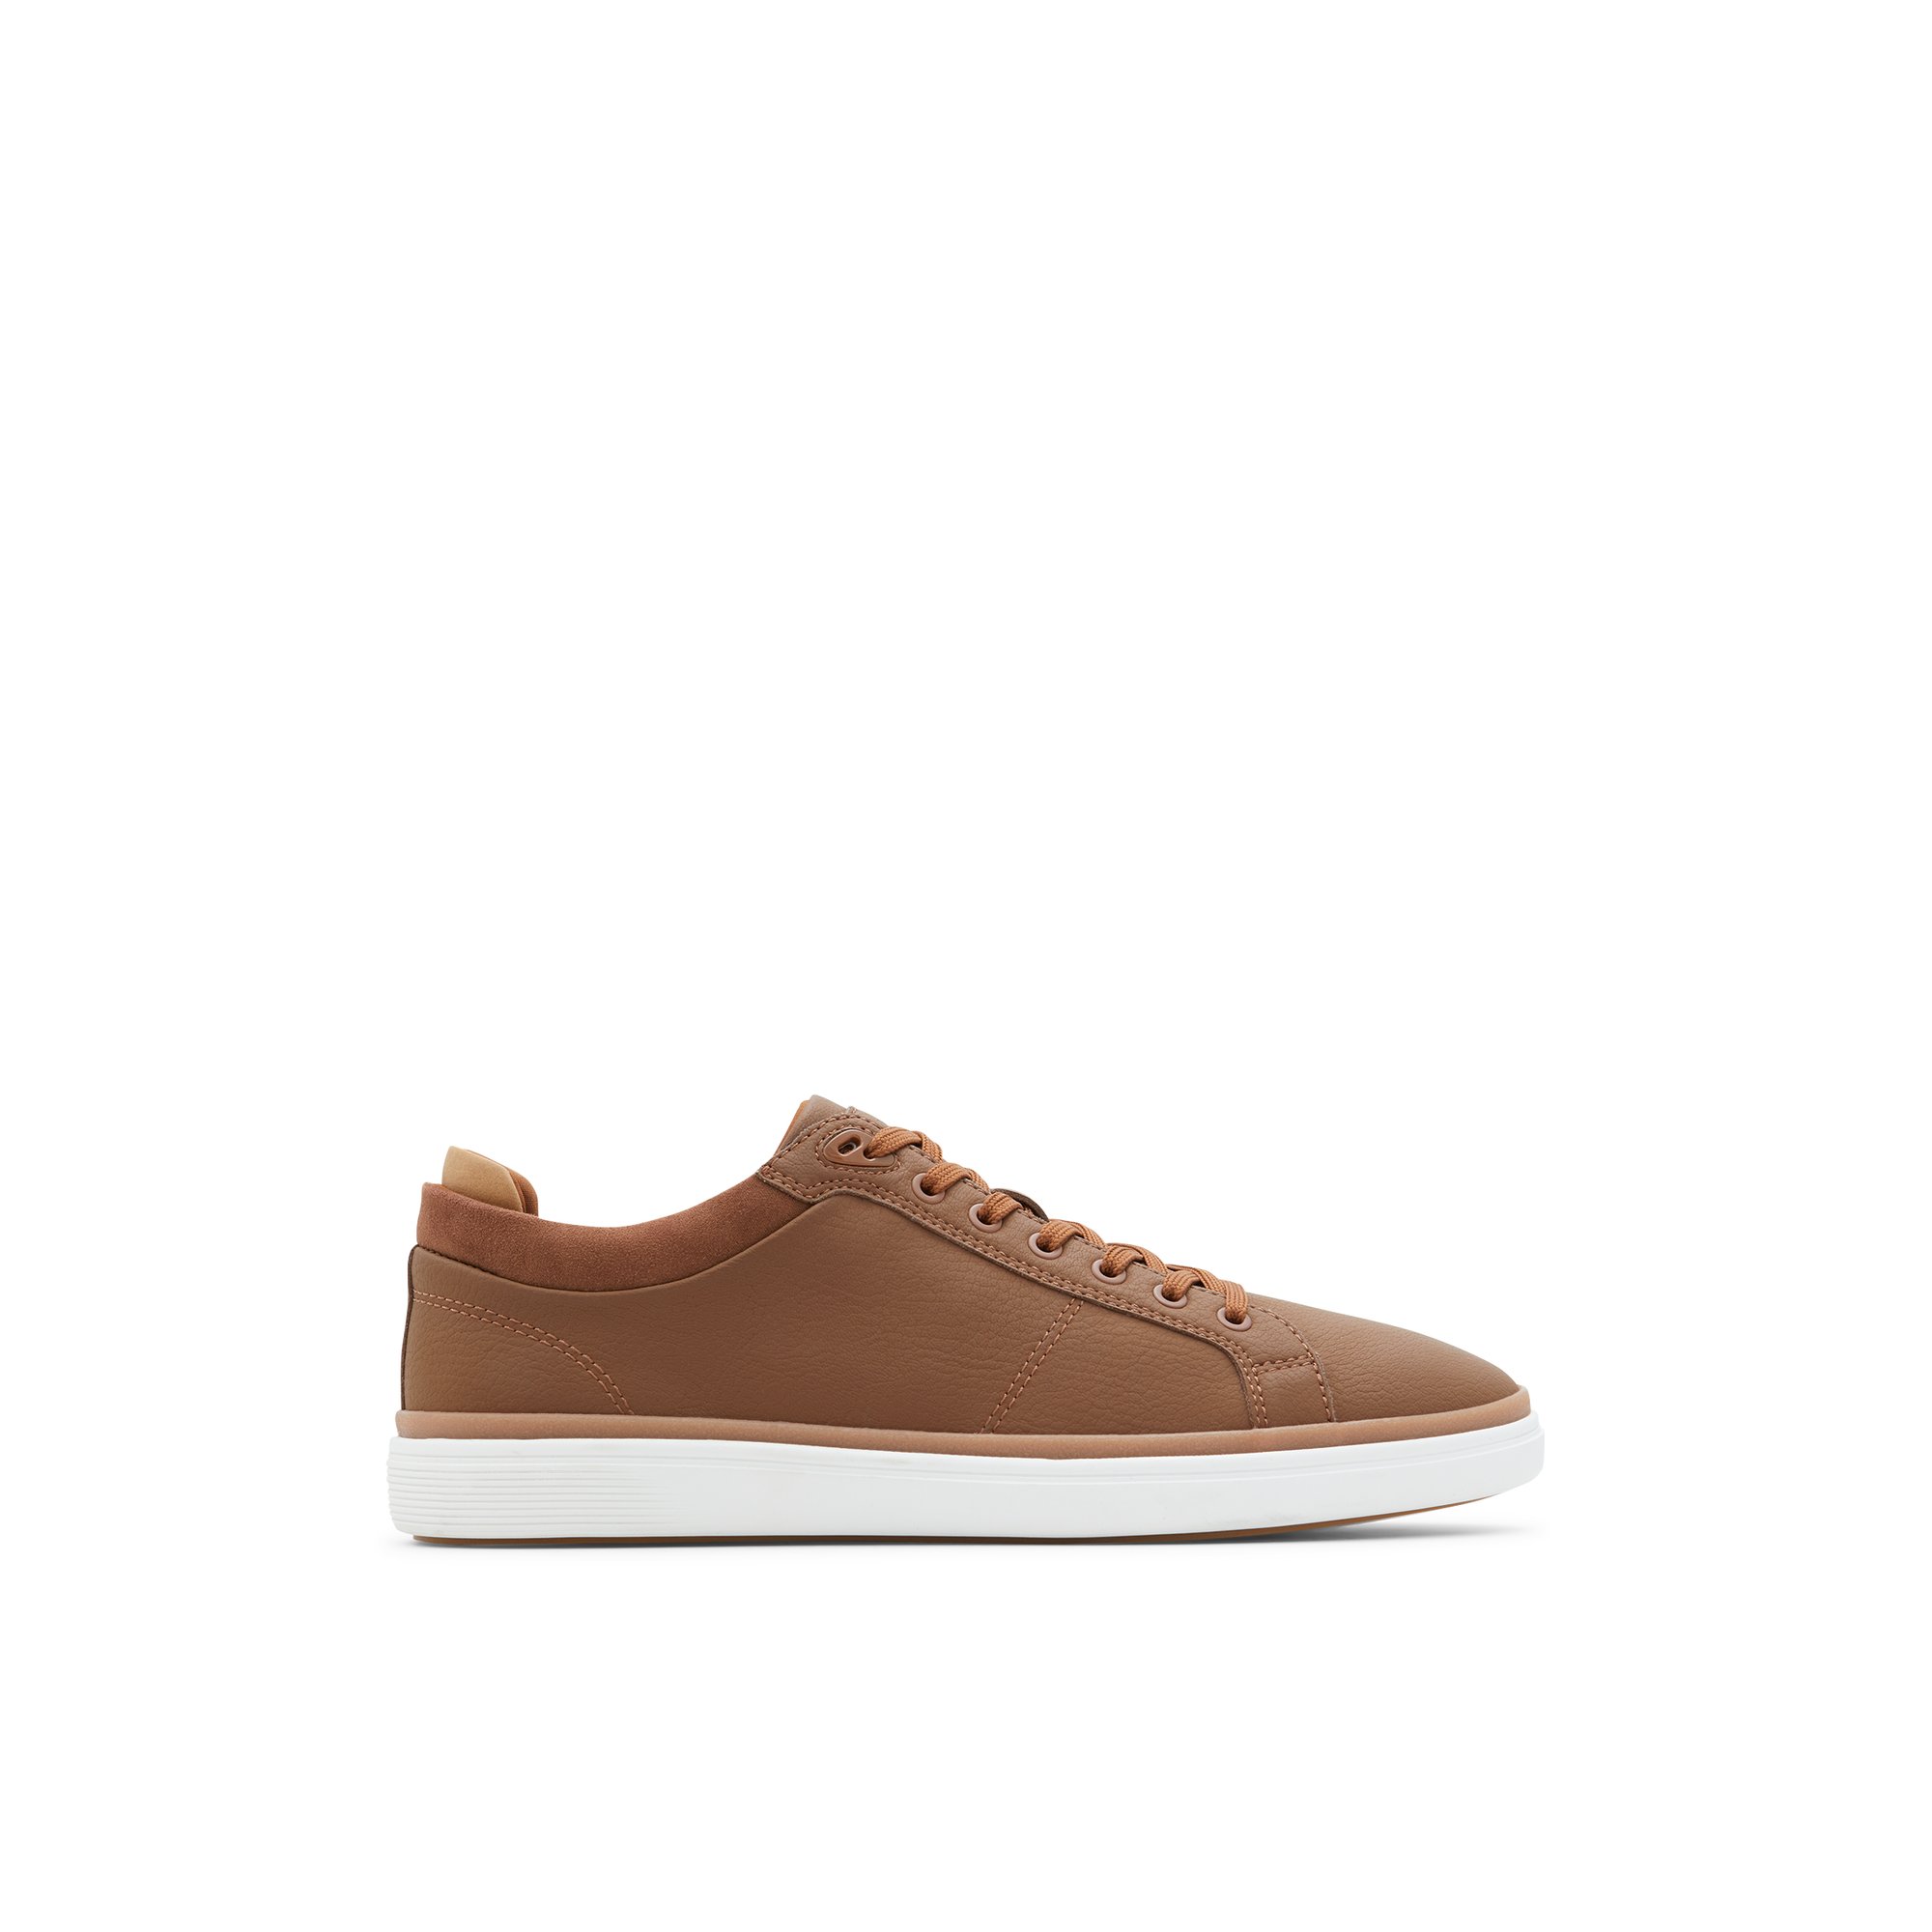 ALDO Finespec - Men's Sneakers Low Top - Brown